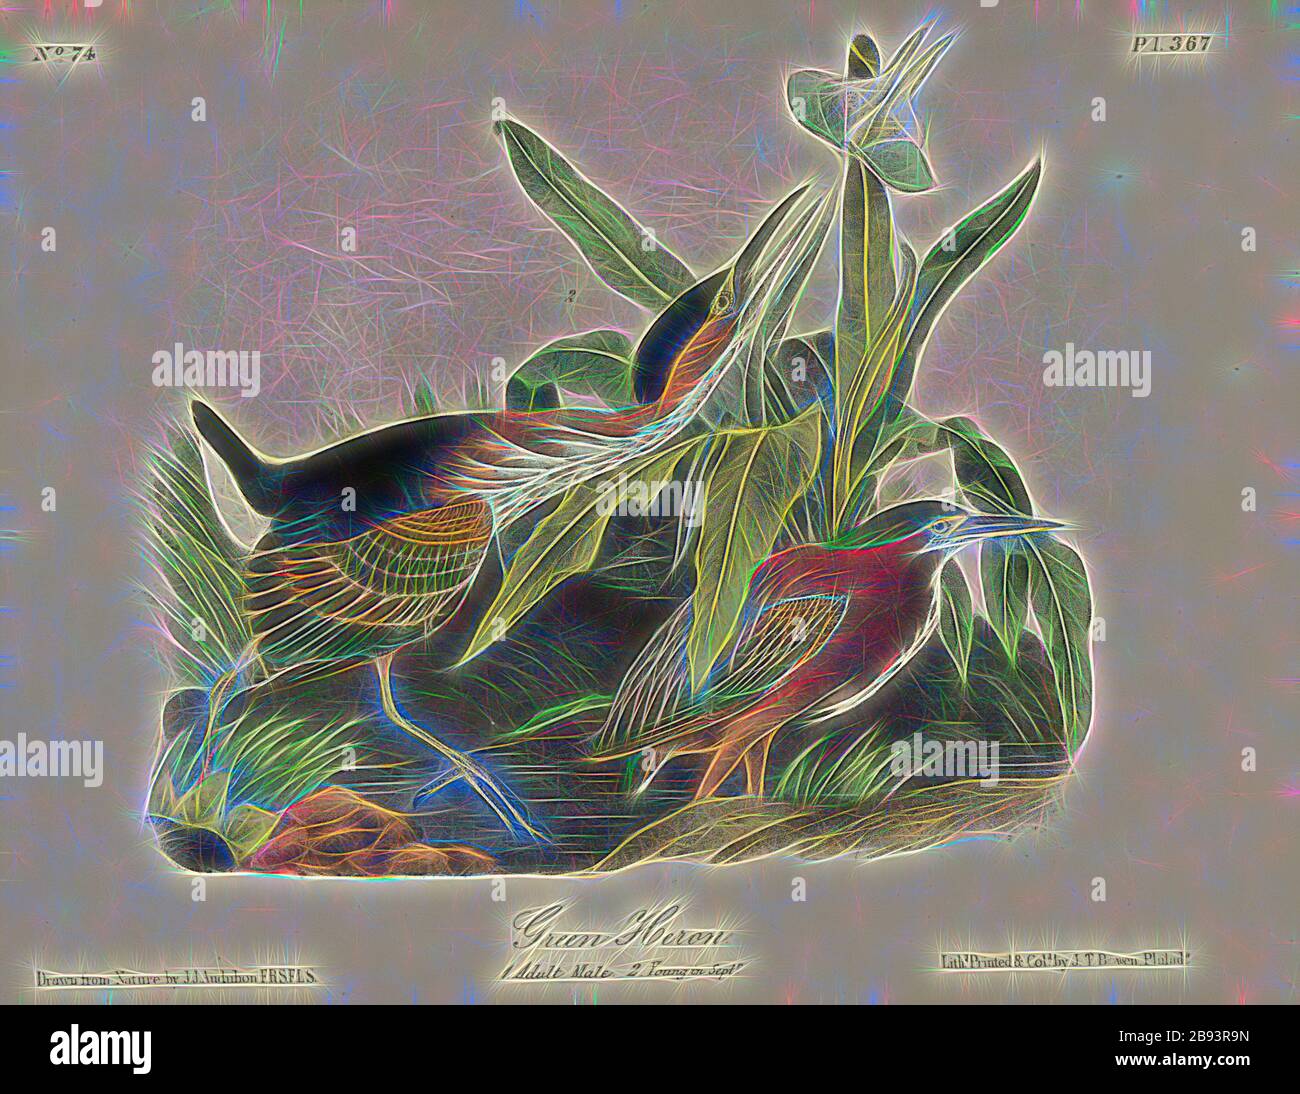 Green Heron, Green Heron (Butorides virescens, Ardea virescens), firmato: J.J. Audubon, J.T. Bowen, litografia, Pl. 367 (Vol 6), Audubon, John James (disegnato), Bowen, J. T. (lith.), 1856, John James Audubon: Gli uccelli d'America: Da disegni fatti negli Stati Uniti e nei loro territori. New York: Audubon, 1856, Reimaged by Gibon, design di calda allegra luce di luminosità e raggi di luce radianza. Arte classica reinventata con un tocco moderno. La fotografia ispirata al futurismo, abbracciando l'energia dinamica della tecnologia moderna, del movimento, della velocità e rivoluzionando la cultura. Foto Stock